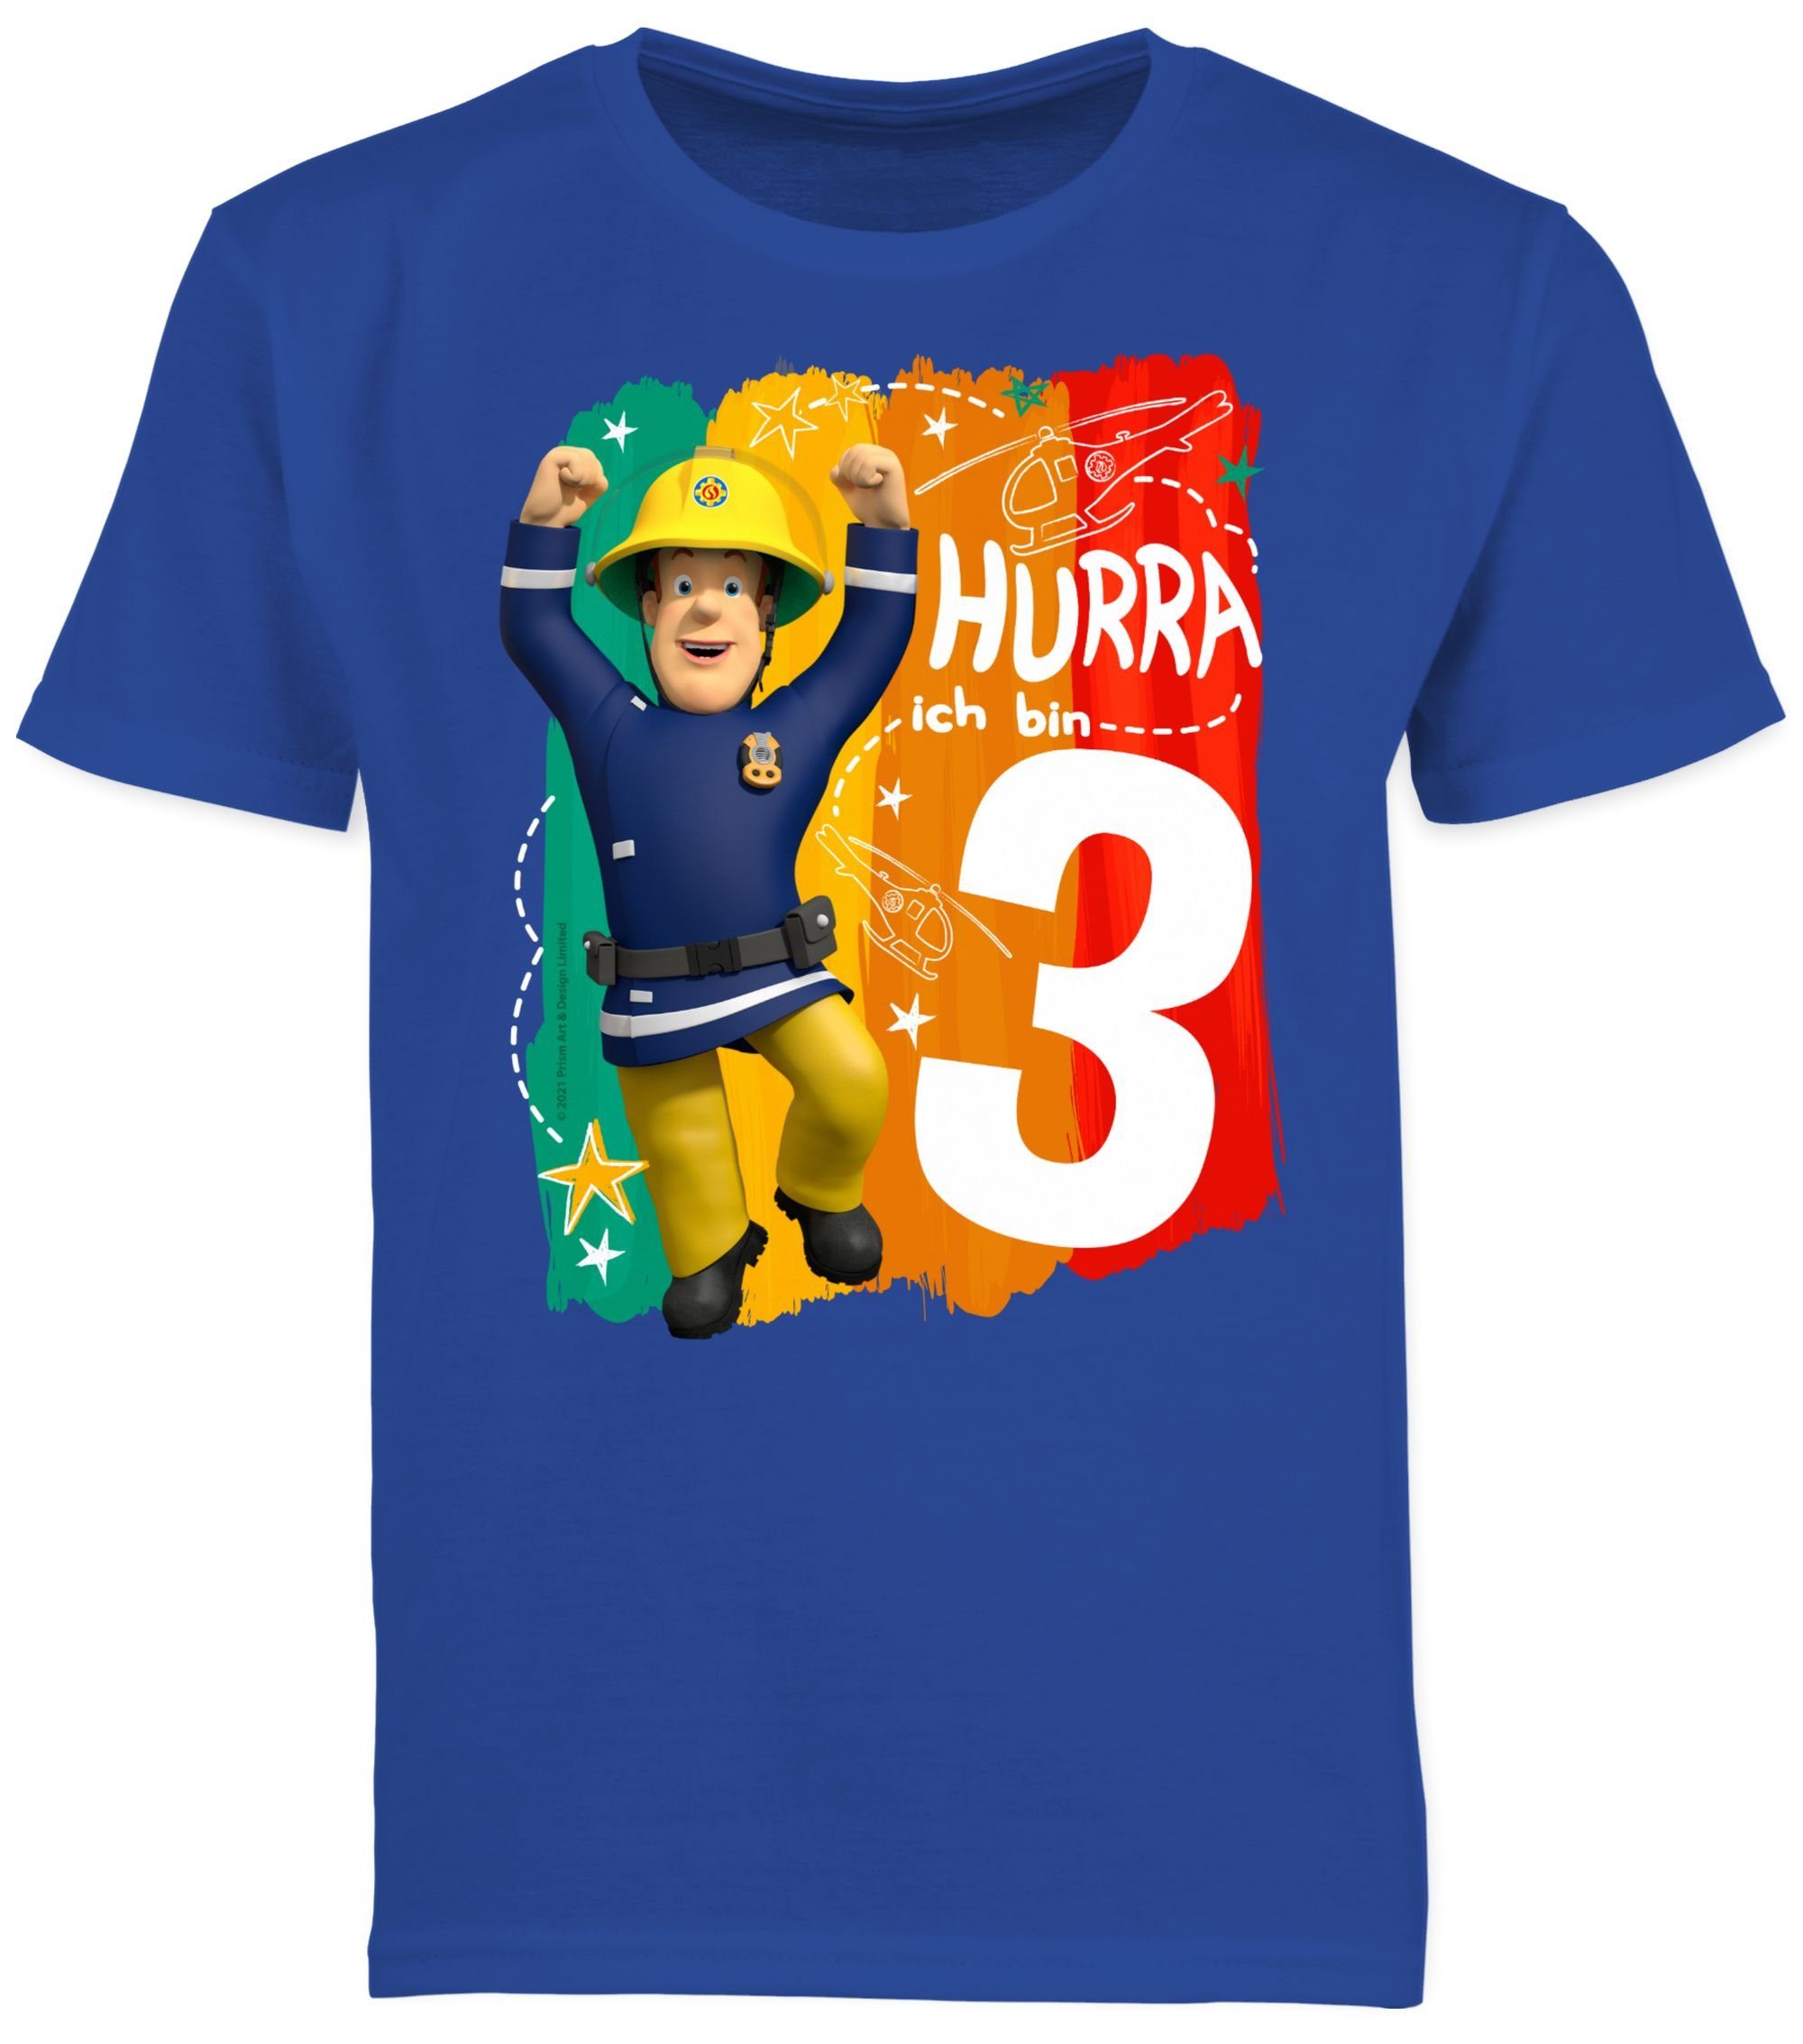 Shirtracer T-Shirt Hurra ich Kinder - 2 Sam T-Shirt Royalblau shirt Feuerwehrmann - 3 bin - feuerwehr - Jungen Sam sam tshirt - birthday cool t-shirt - Jungen mit Drei t